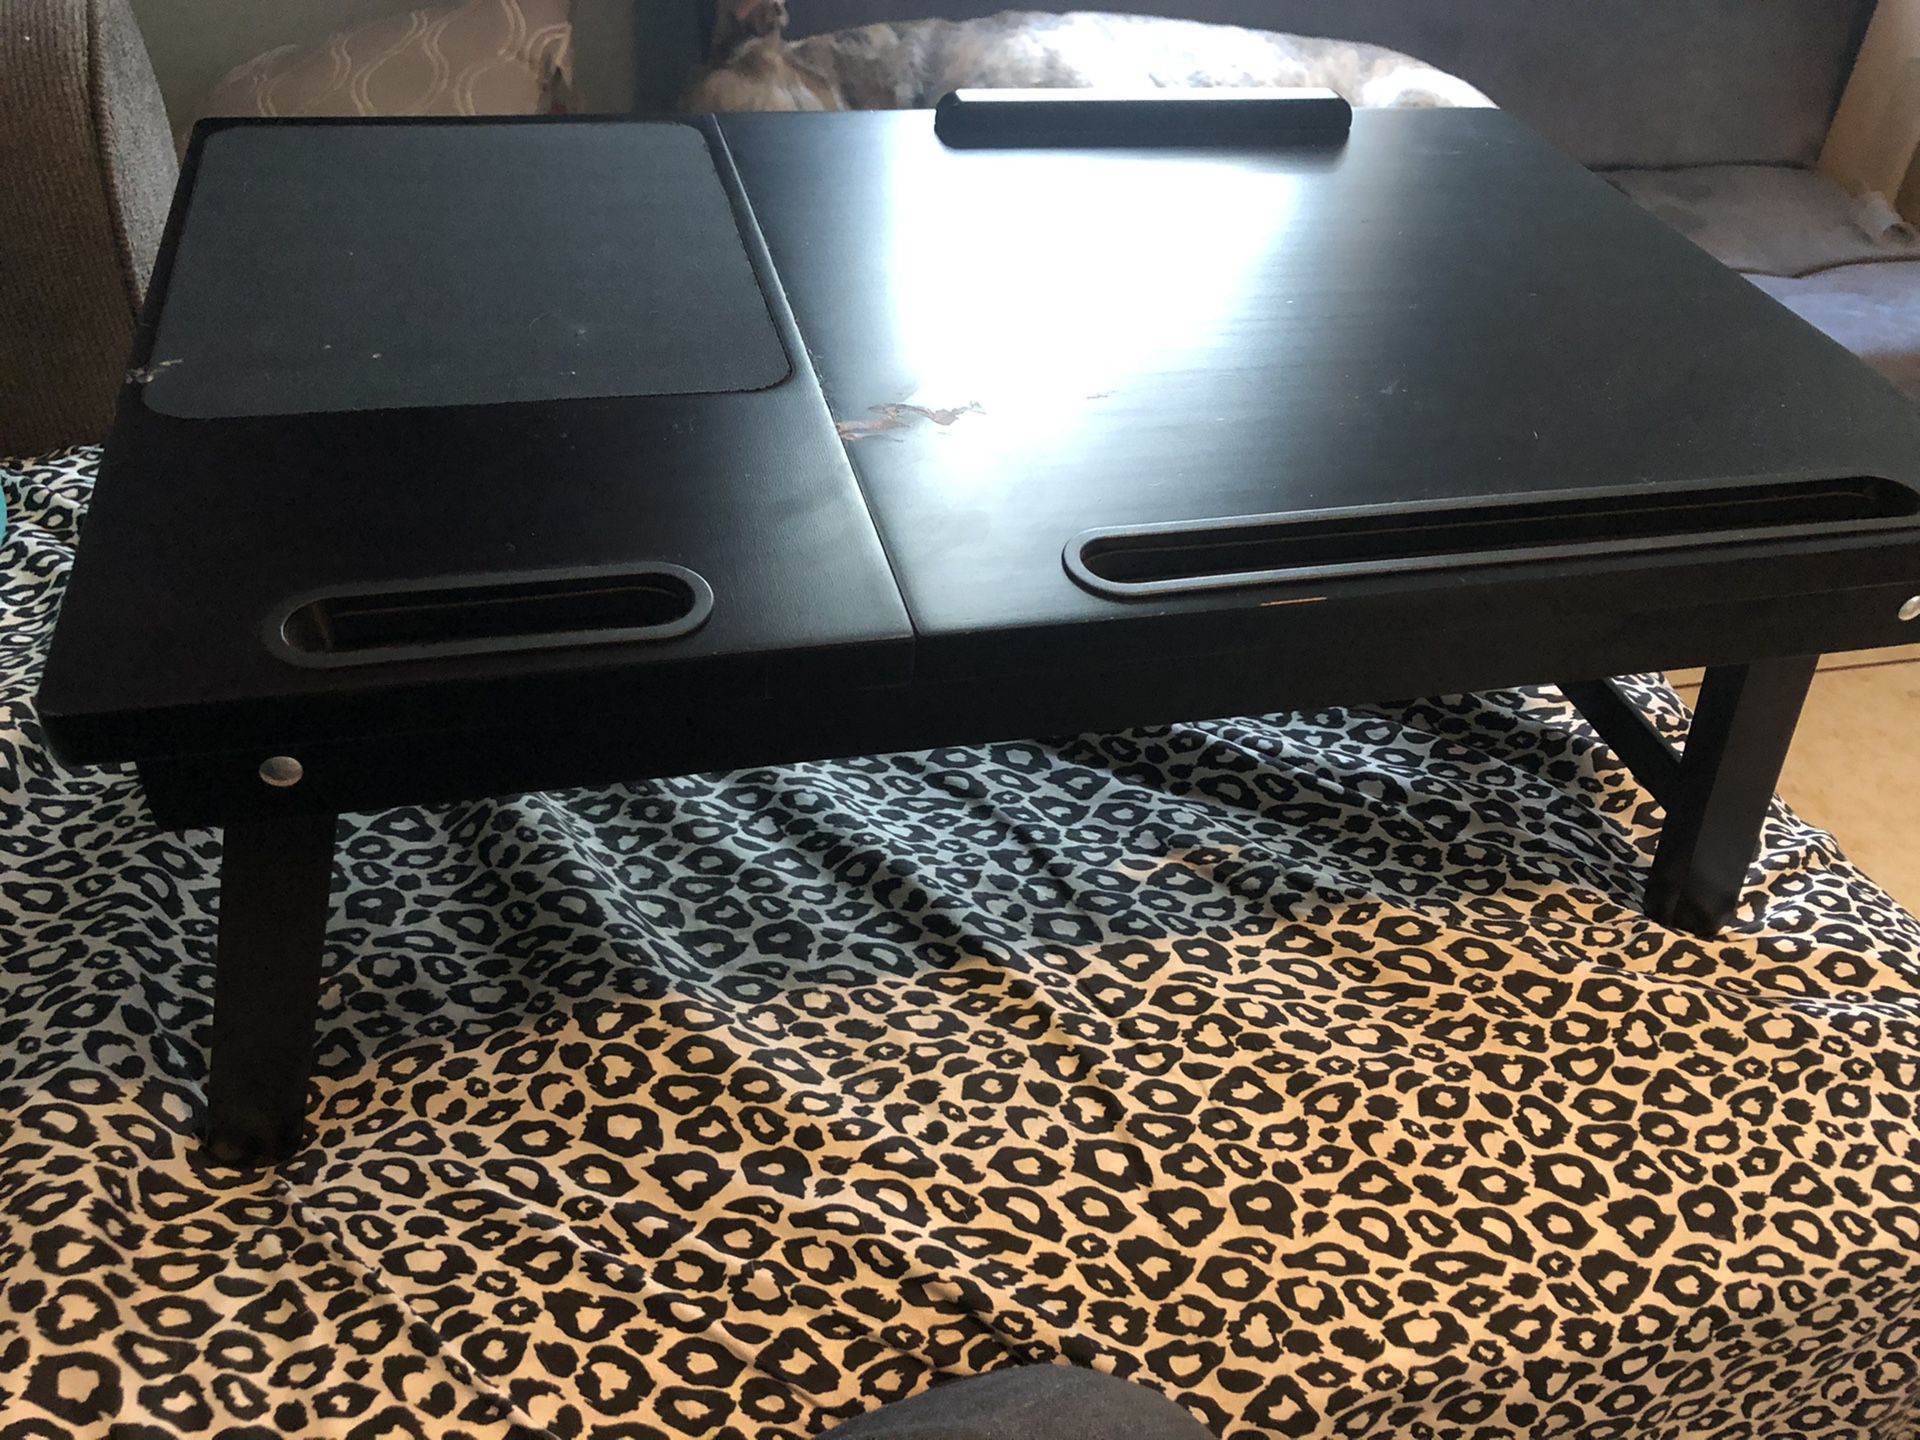 Lap desk/table